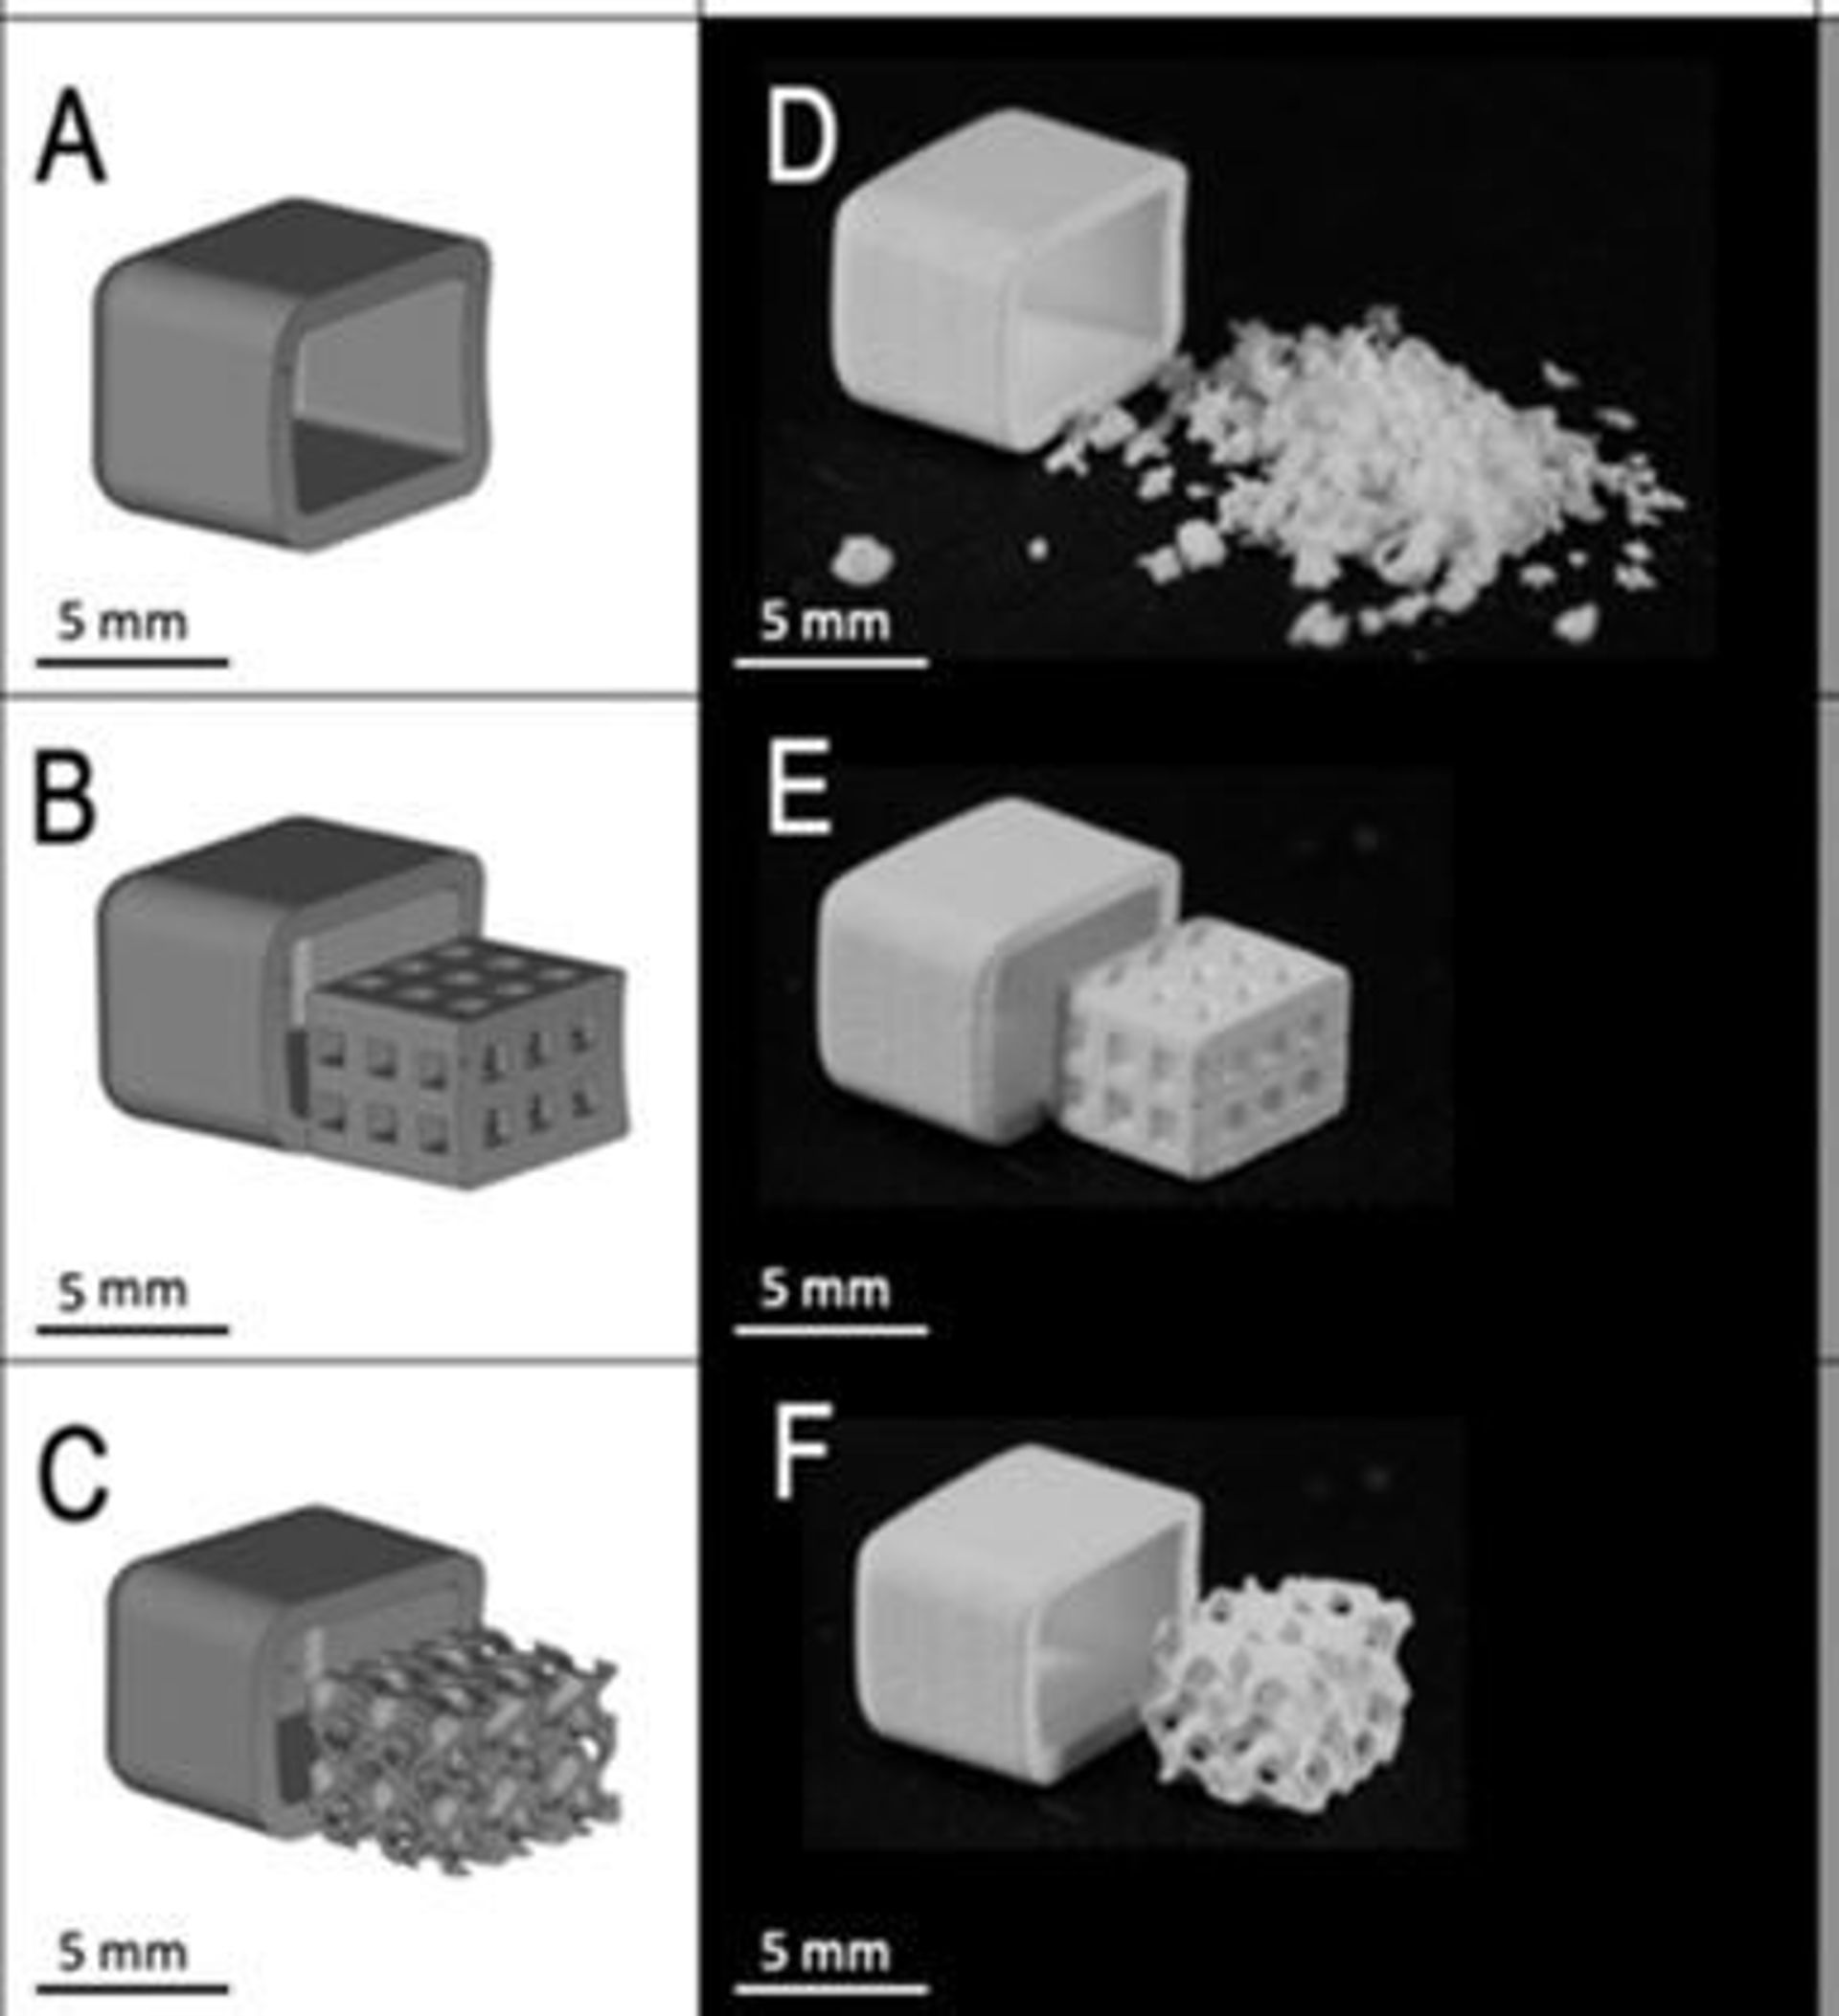 Les différentes formes utilisées pour les implants : 
- A et D : matériaux utilisés dans la pratique clinique
- B et E : matériaux imprimés en 3D, de forme "classique"
- C et F : matériaux de forme gyroïde développés par Liesbet Geris et son équipe